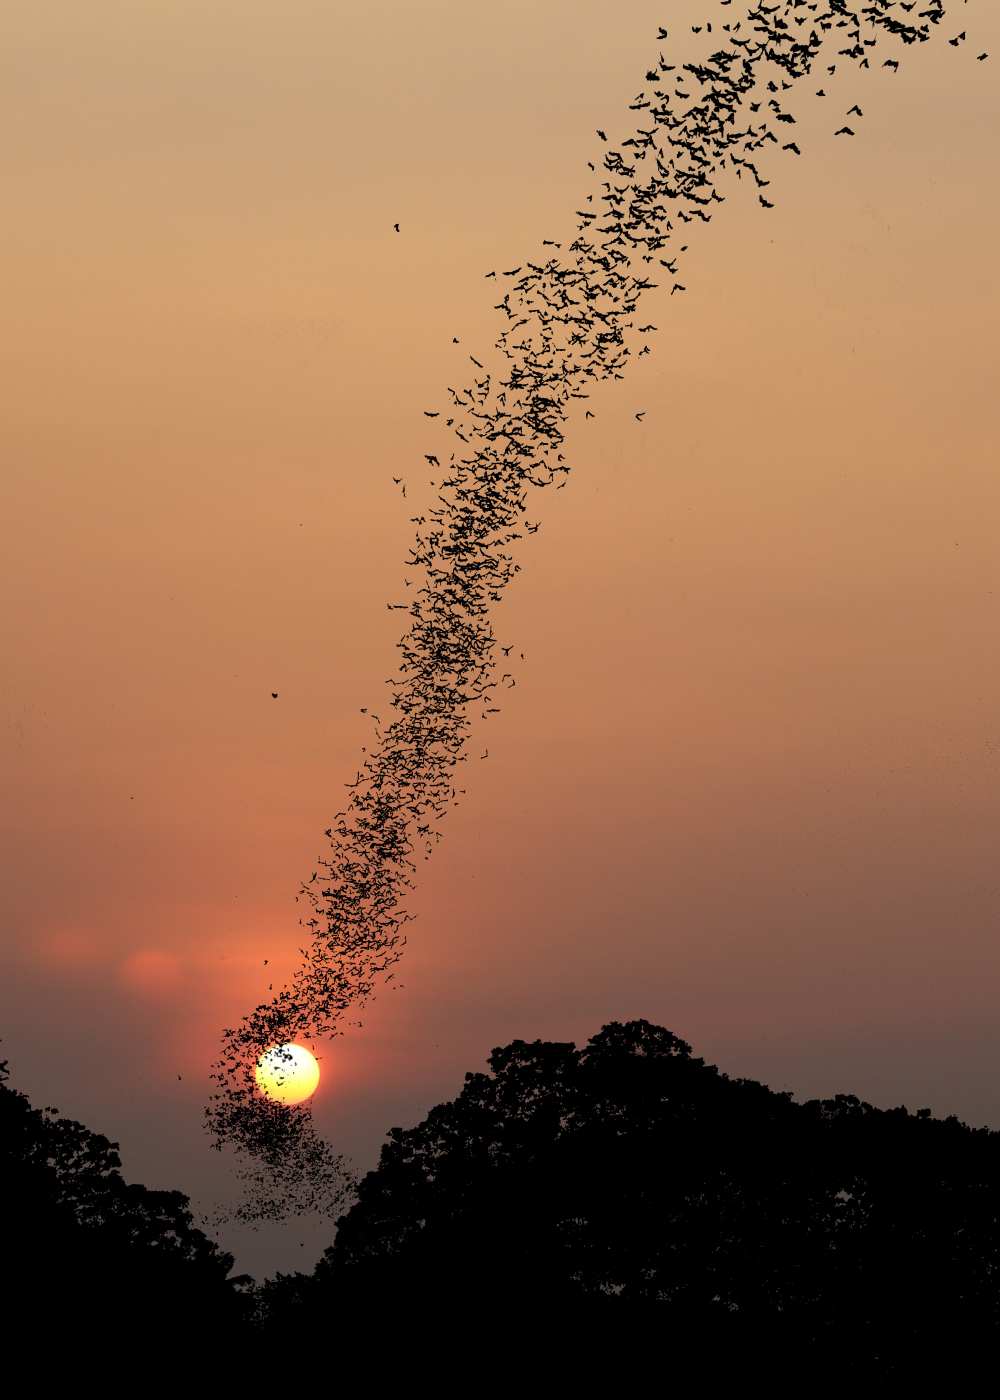 Bat swarm at sunset de Jean De Spiegeleer